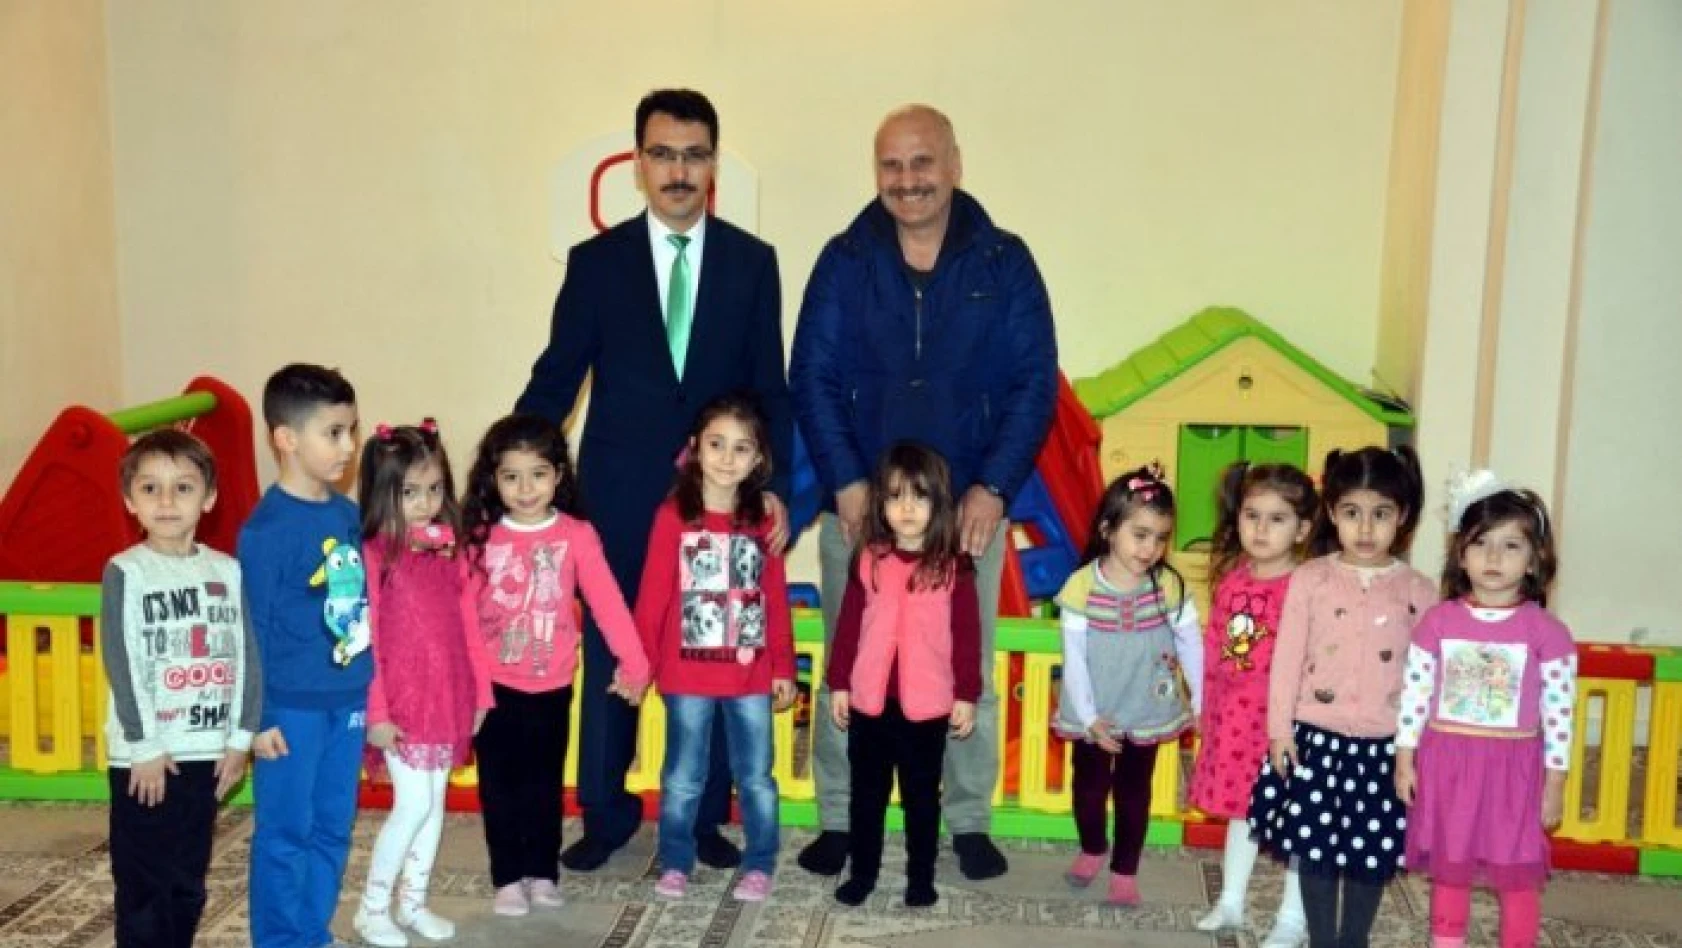 Sinop'ta camide çocuk oyun parkı oluşturuldu